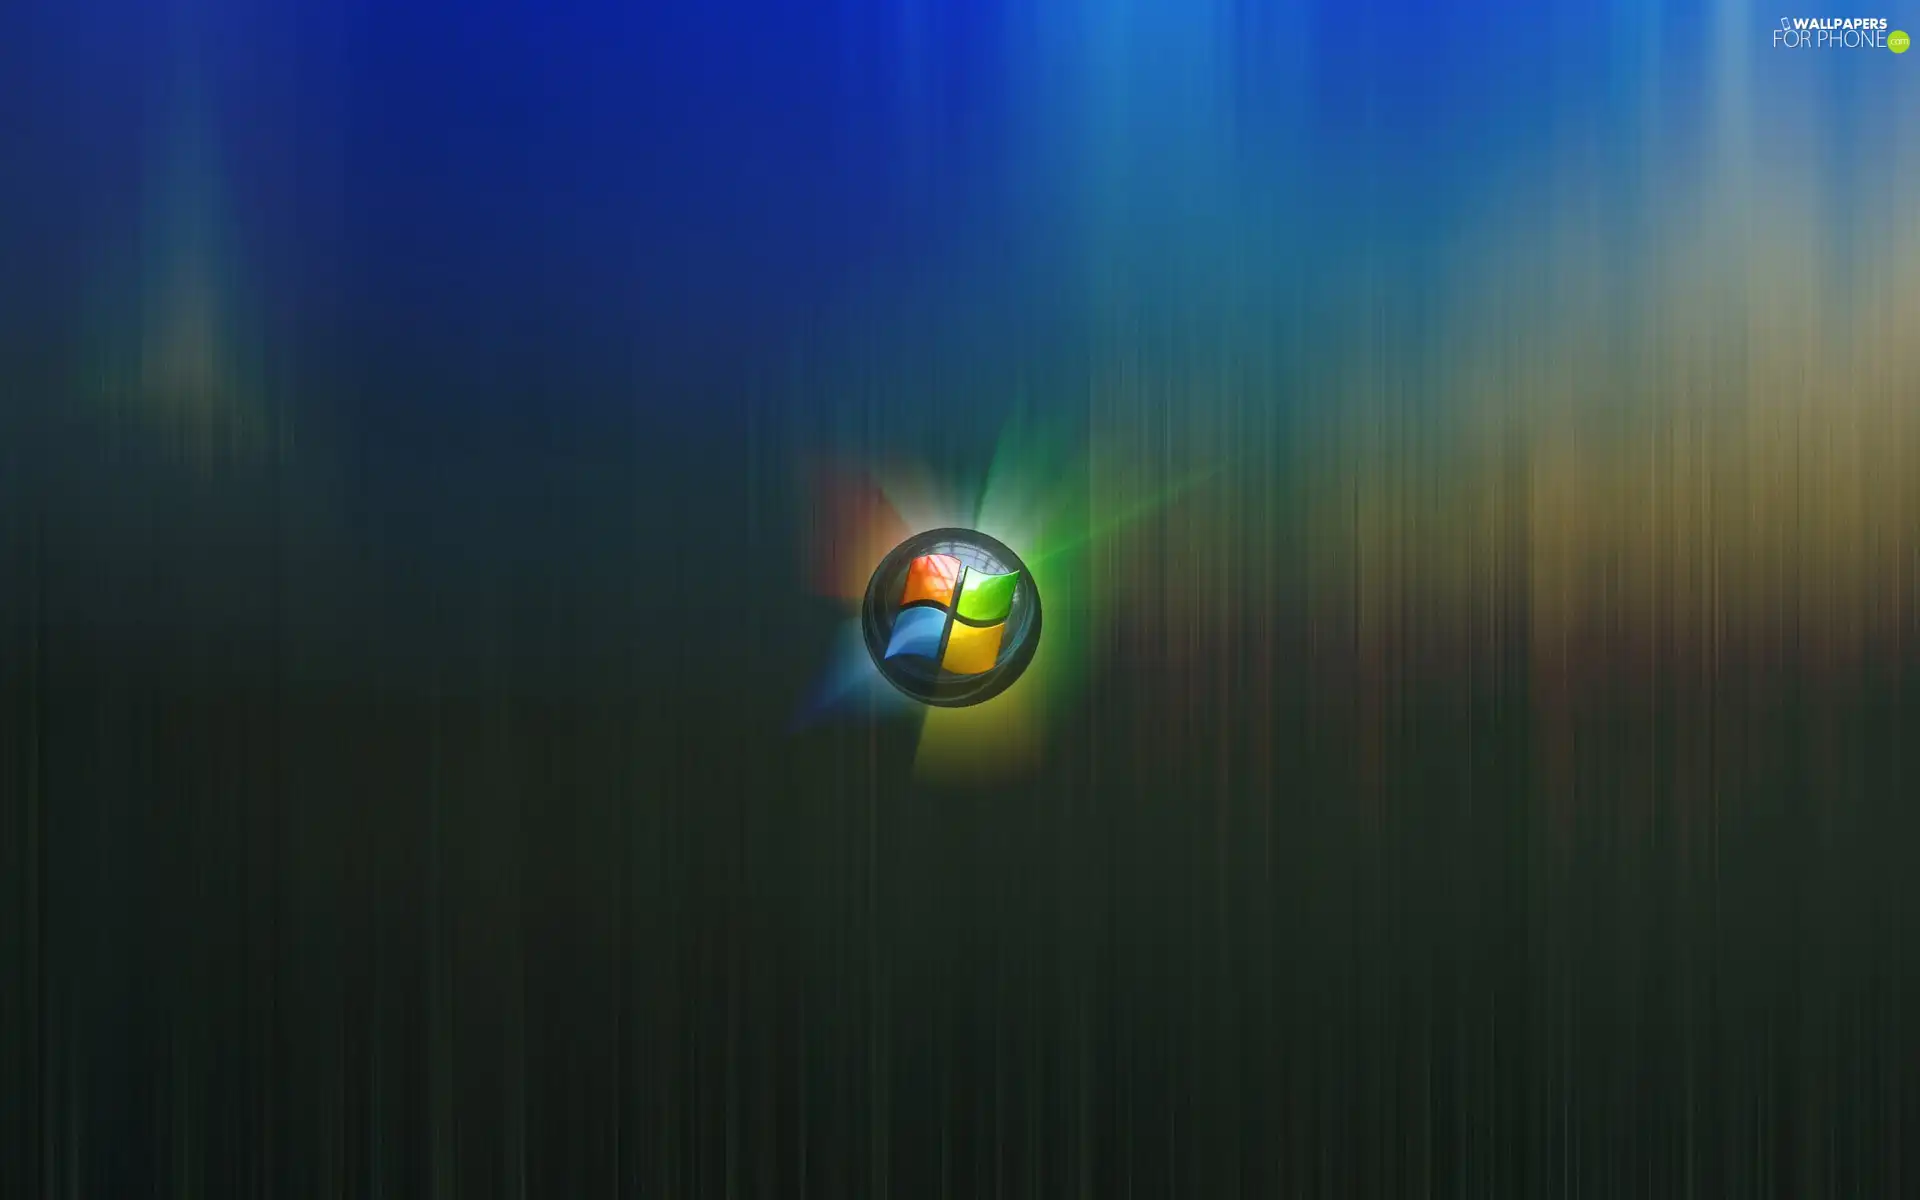 Vista, illuminated, logo